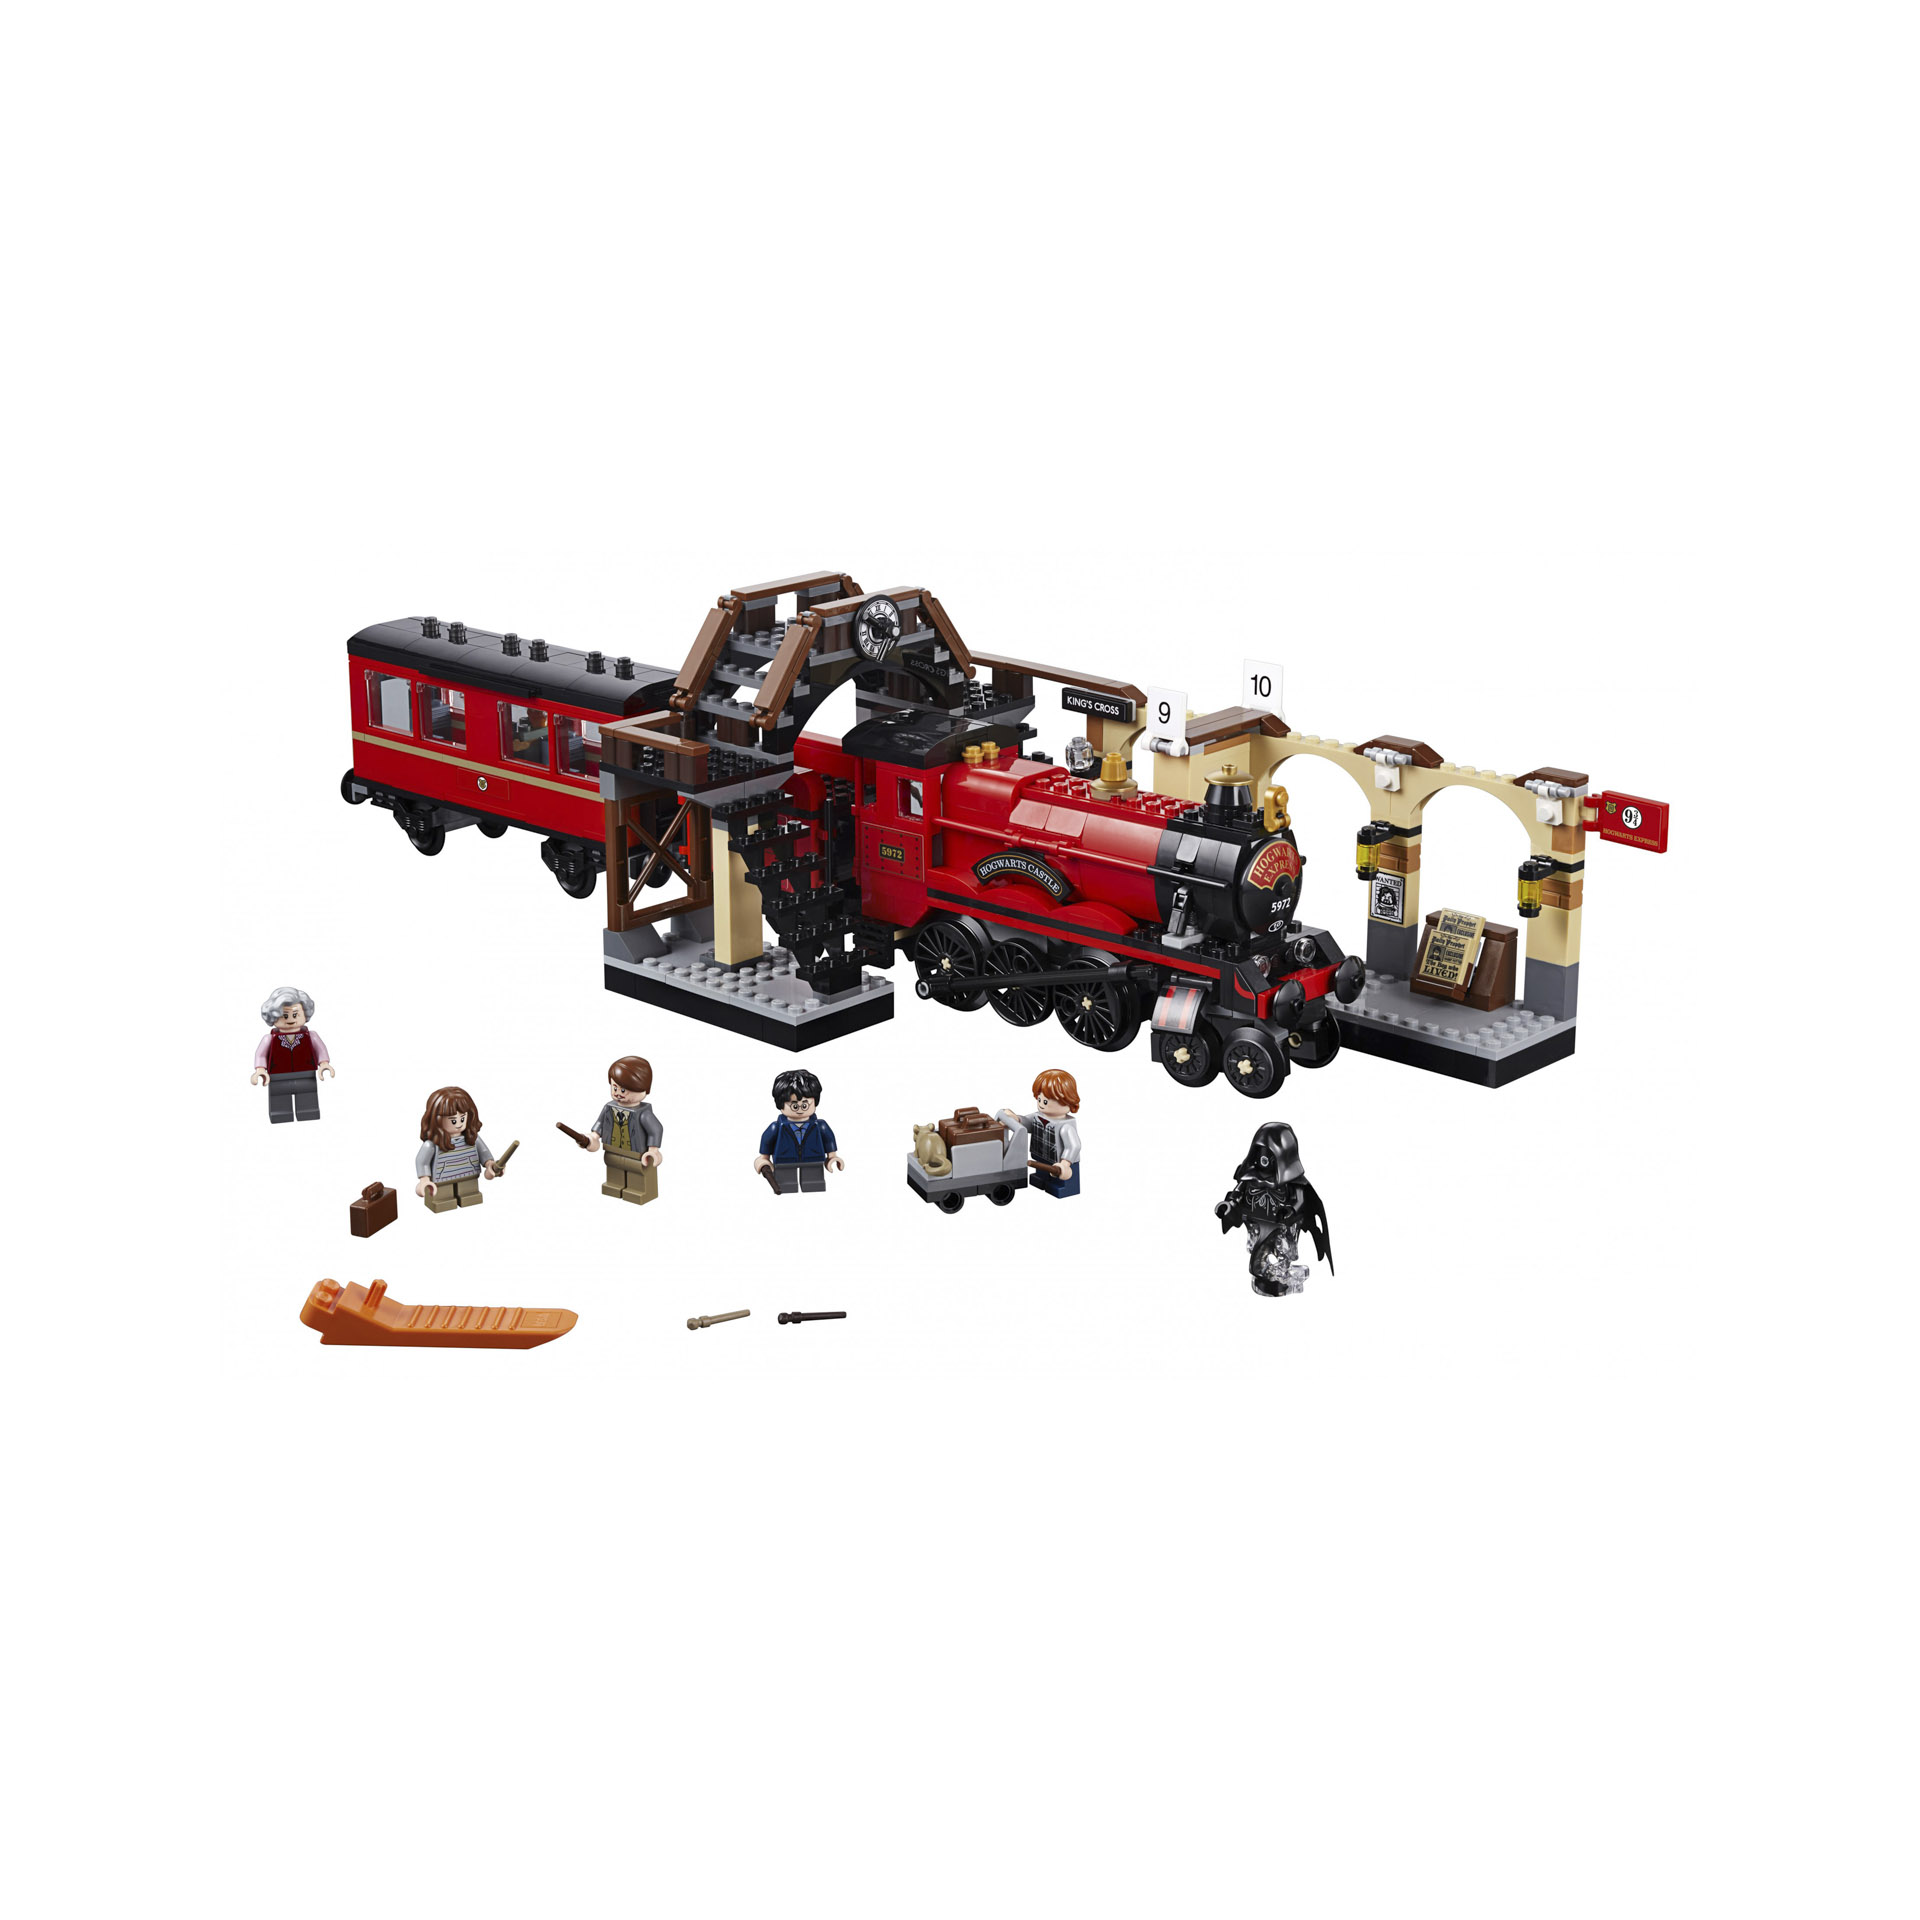 LEGO Harry Potter Espresso per Hogwarts, Giocattolo e Idea Regalo per gli Amanti 75955, , large